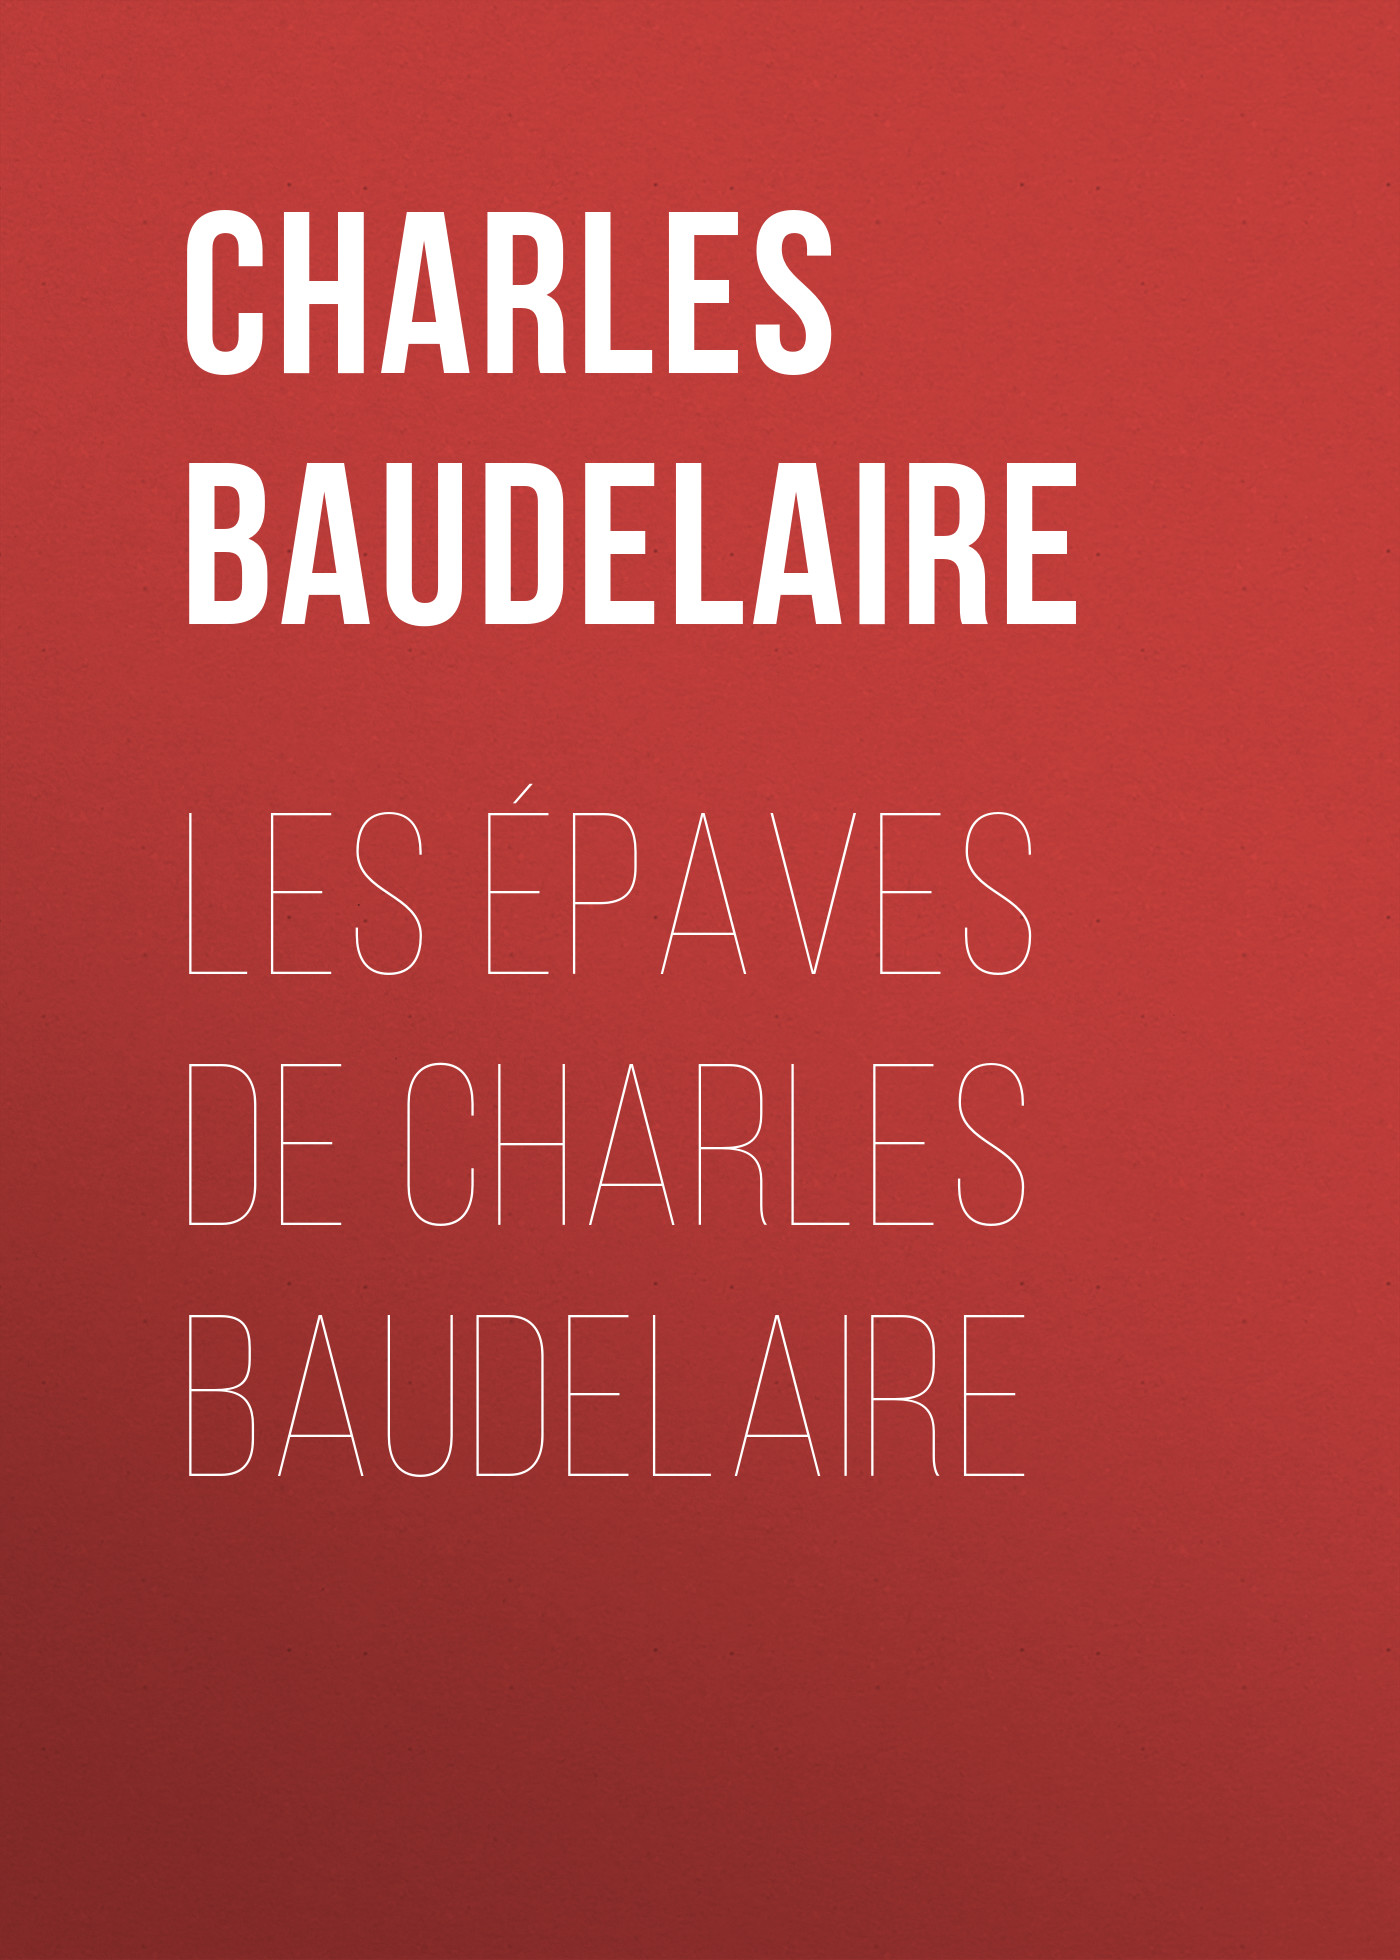 Книга Les épaves de Charles Baudelaire из серии , созданная Charles Baudelaire, может относится к жанру Зарубежная старинная литература, Зарубежная классика, Зарубежные стихи. Стоимость электронной книги Les épaves de Charles Baudelaire с идентификатором 24177548 составляет 0.90 руб.